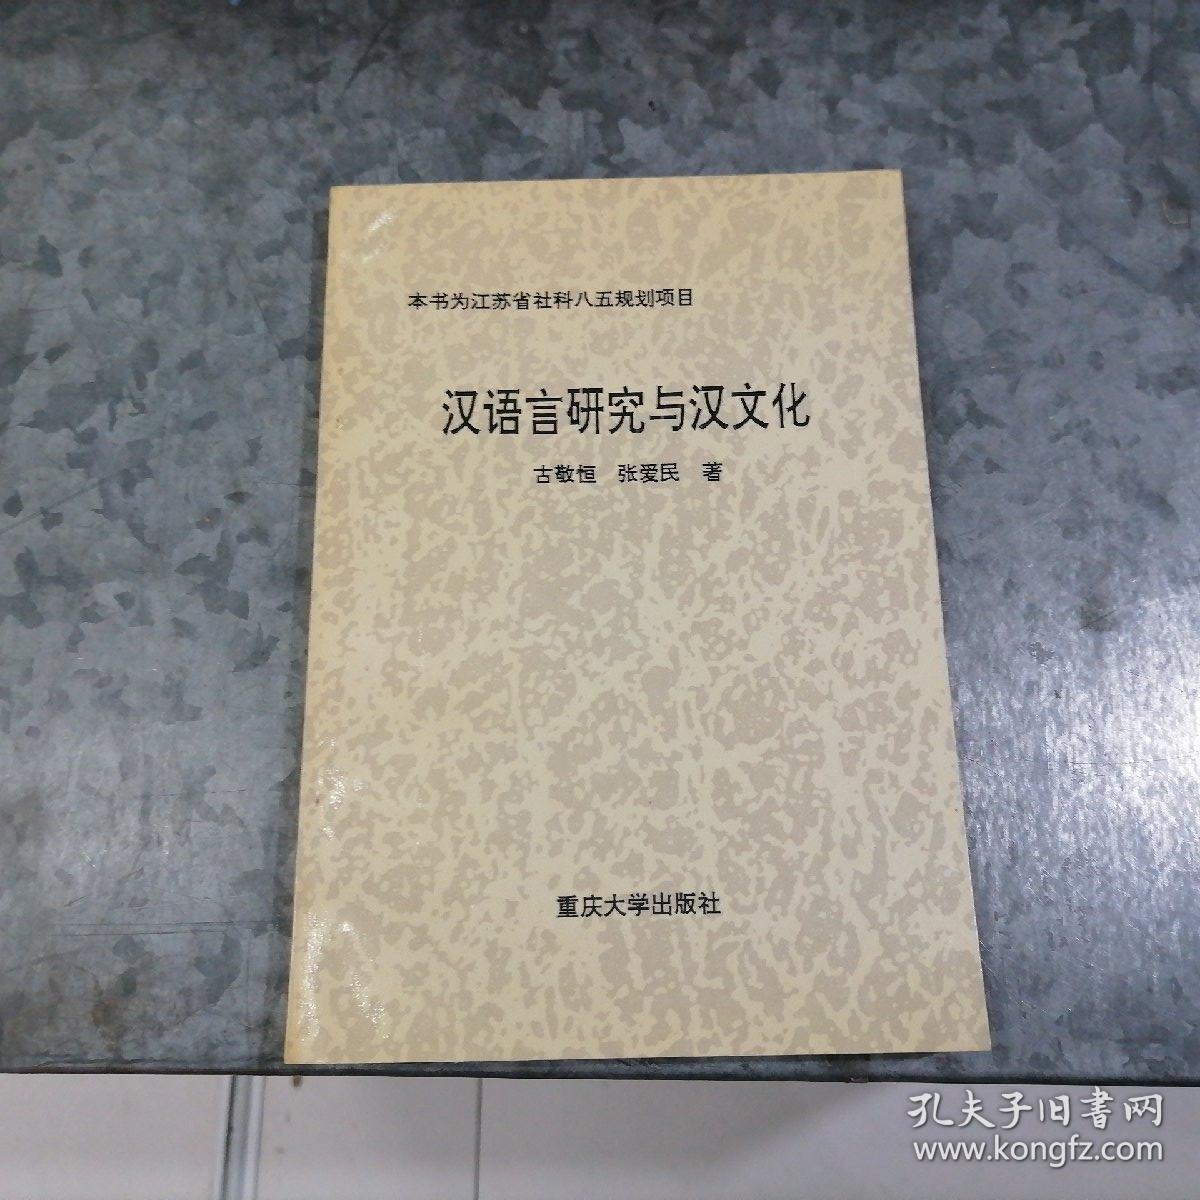 P7765汉语言研究与汉文化 作者张爱民签赠本